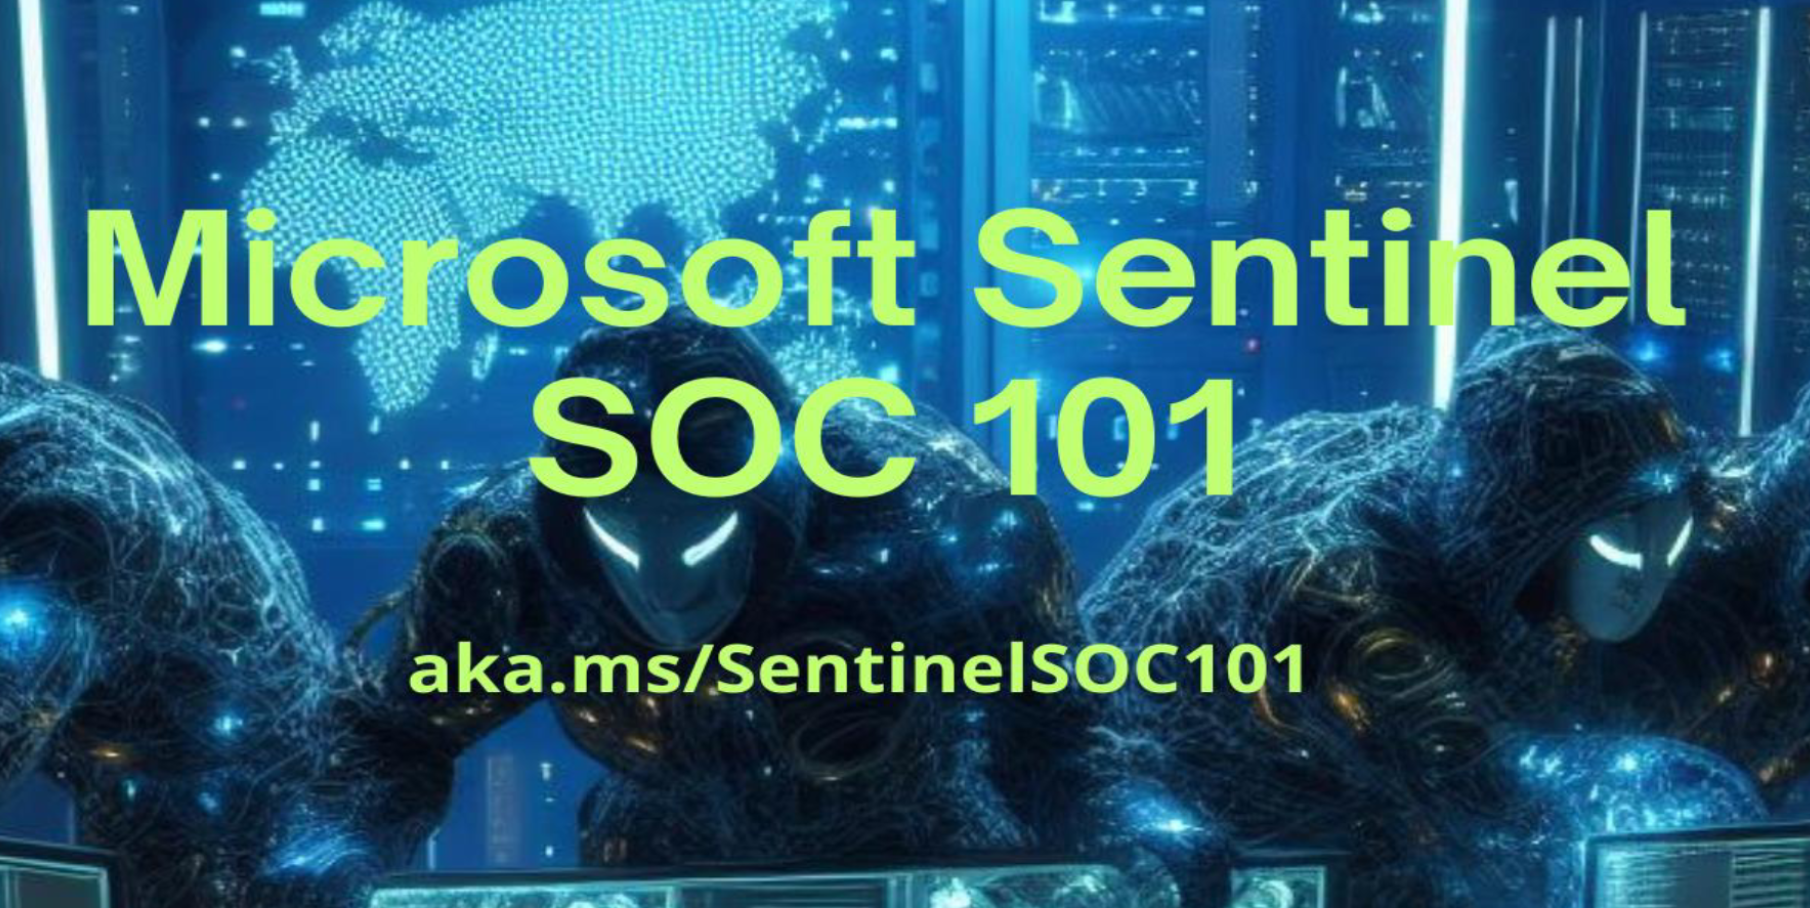 Microsoft Sentinel SOC 101